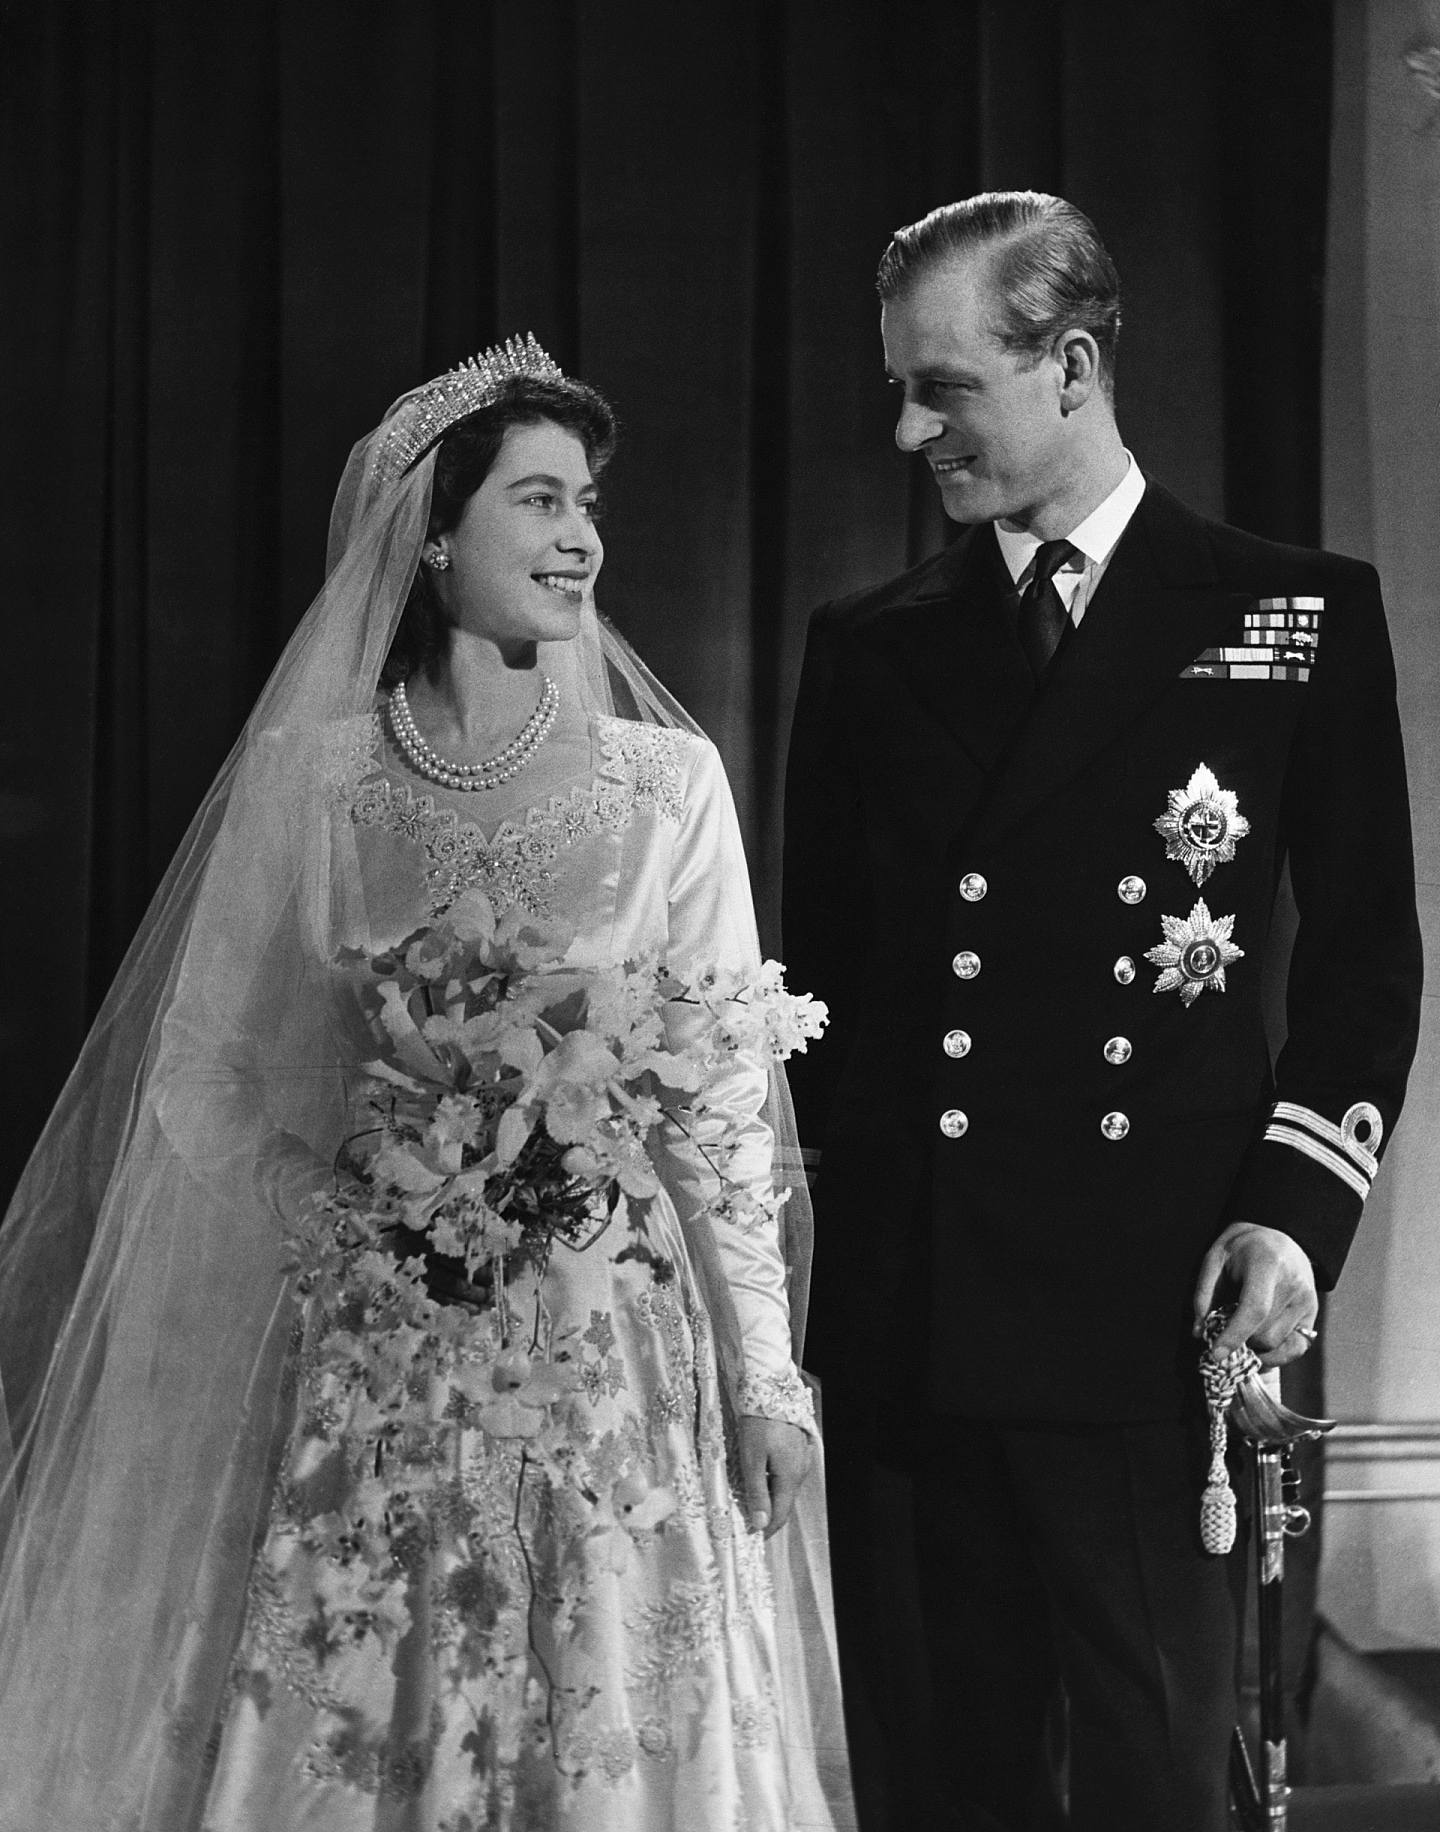 菲臘親王：為了迎娶伊利沙伯公主，菲臘王子自願放棄希臘王室的頭銜，英王隨後封他為愛丁堡公爵（Duke of Edinburgh）。1947年11月，二人舉行盛大婚禮，接待約2000位來賓，另有逾2億民眾通過廣播收聽現場盛況。（Getty Images）